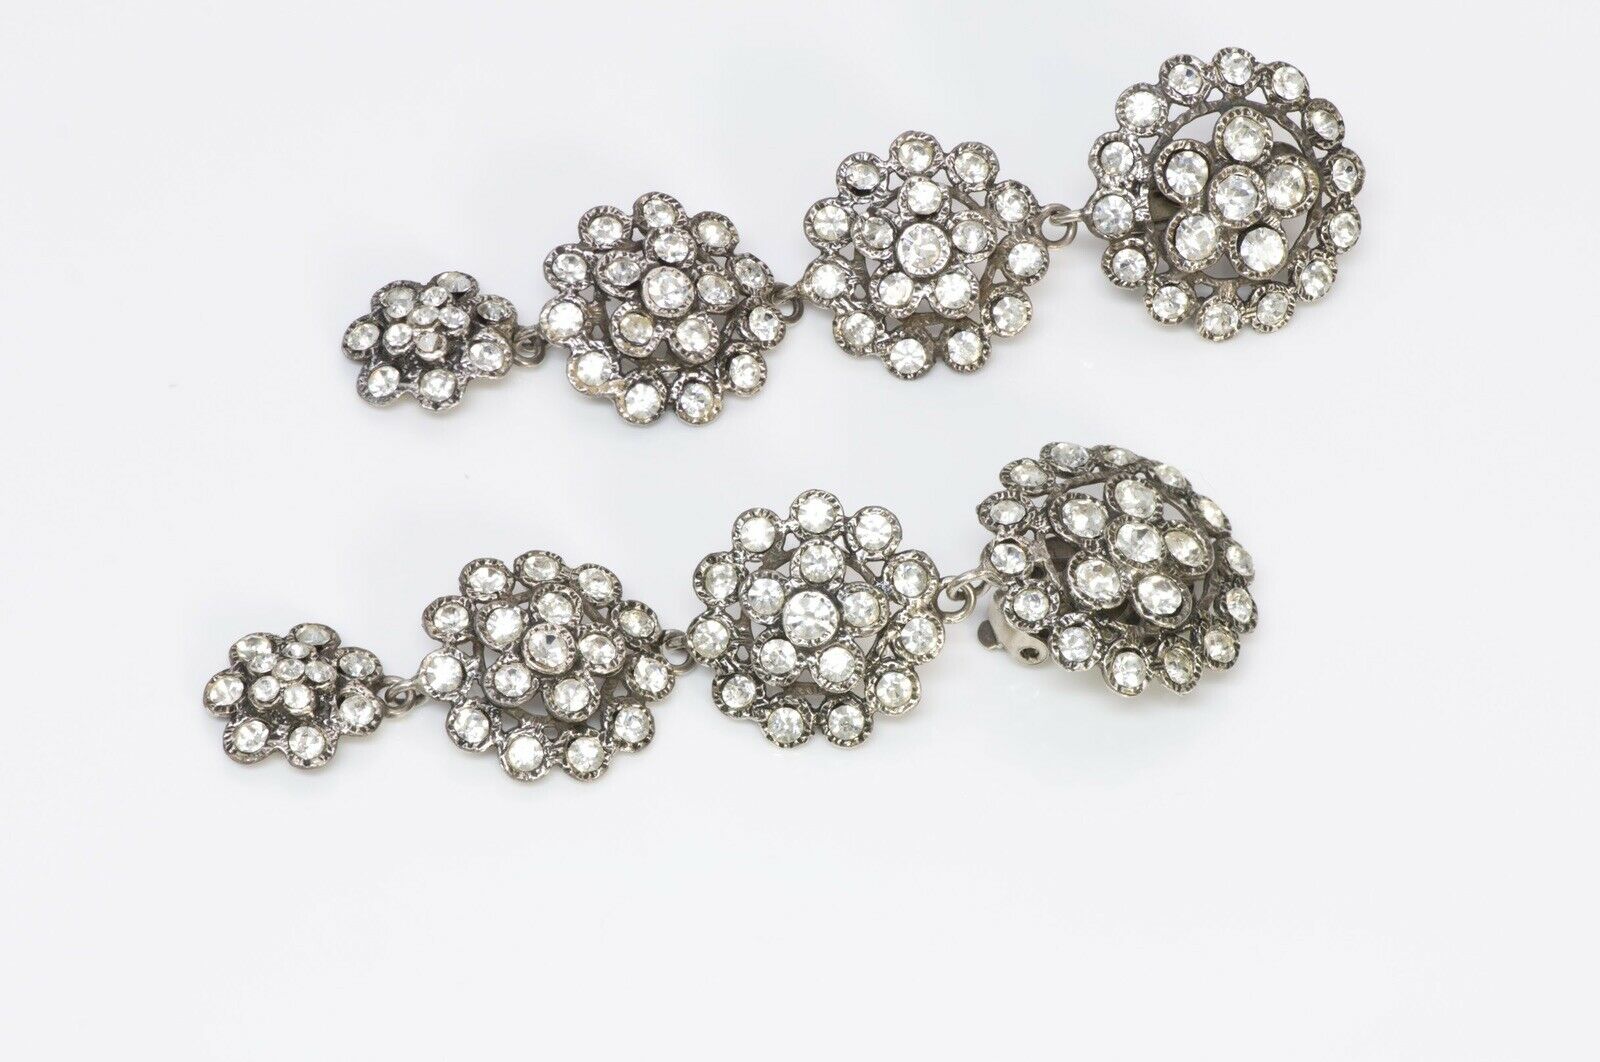 Chanel 1970’s Long Silver Tone Crystal Earrings